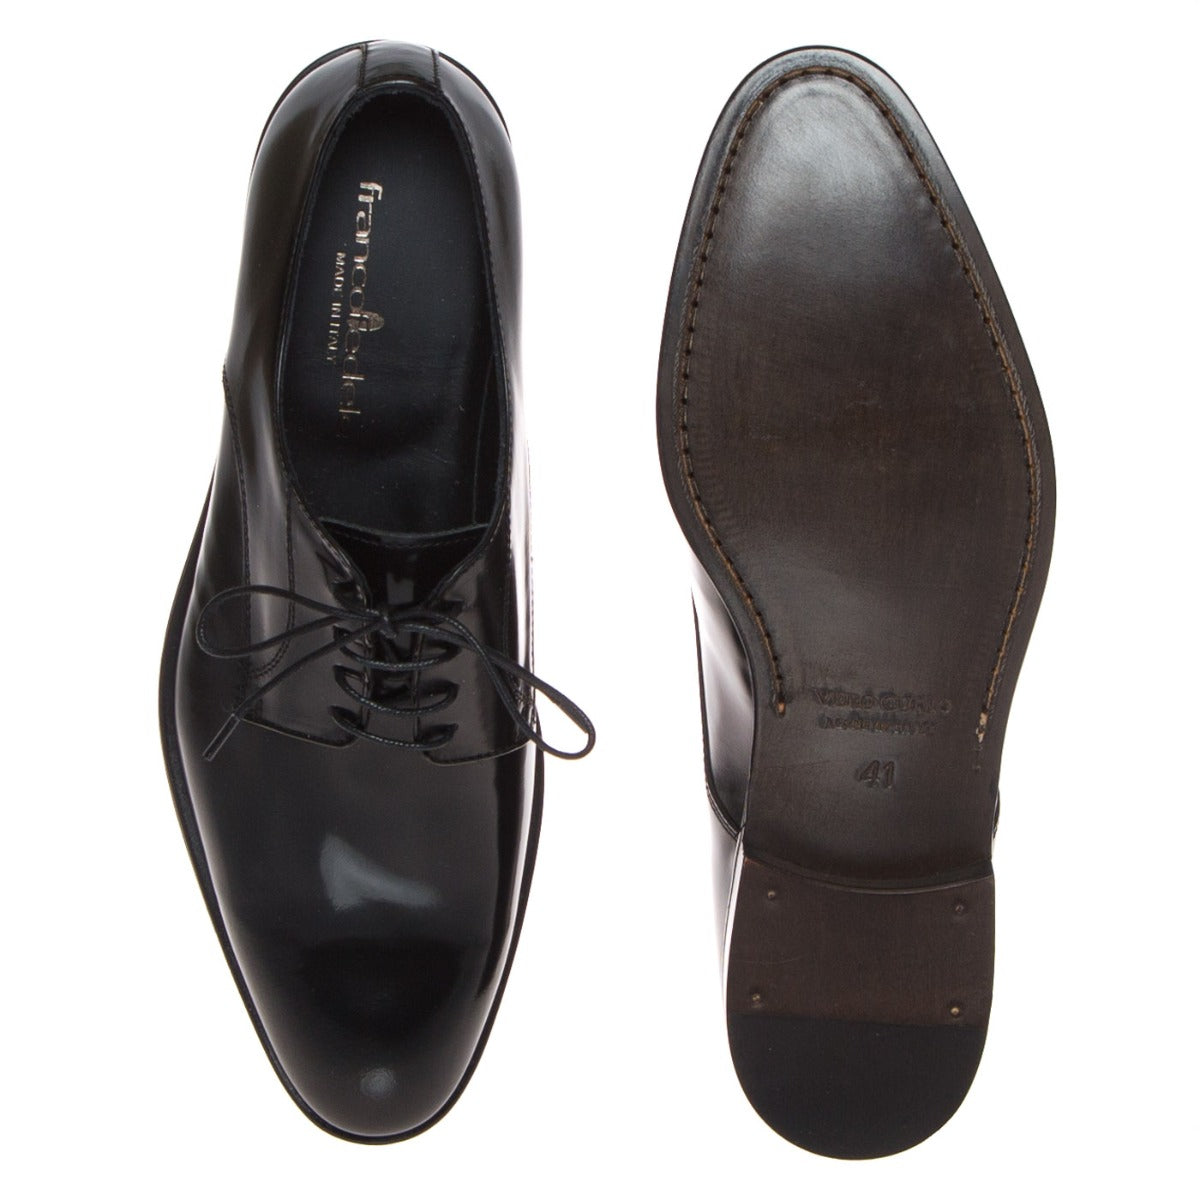 franco-fedele-2984-scarpa-elegante-uomo-pelle-nero